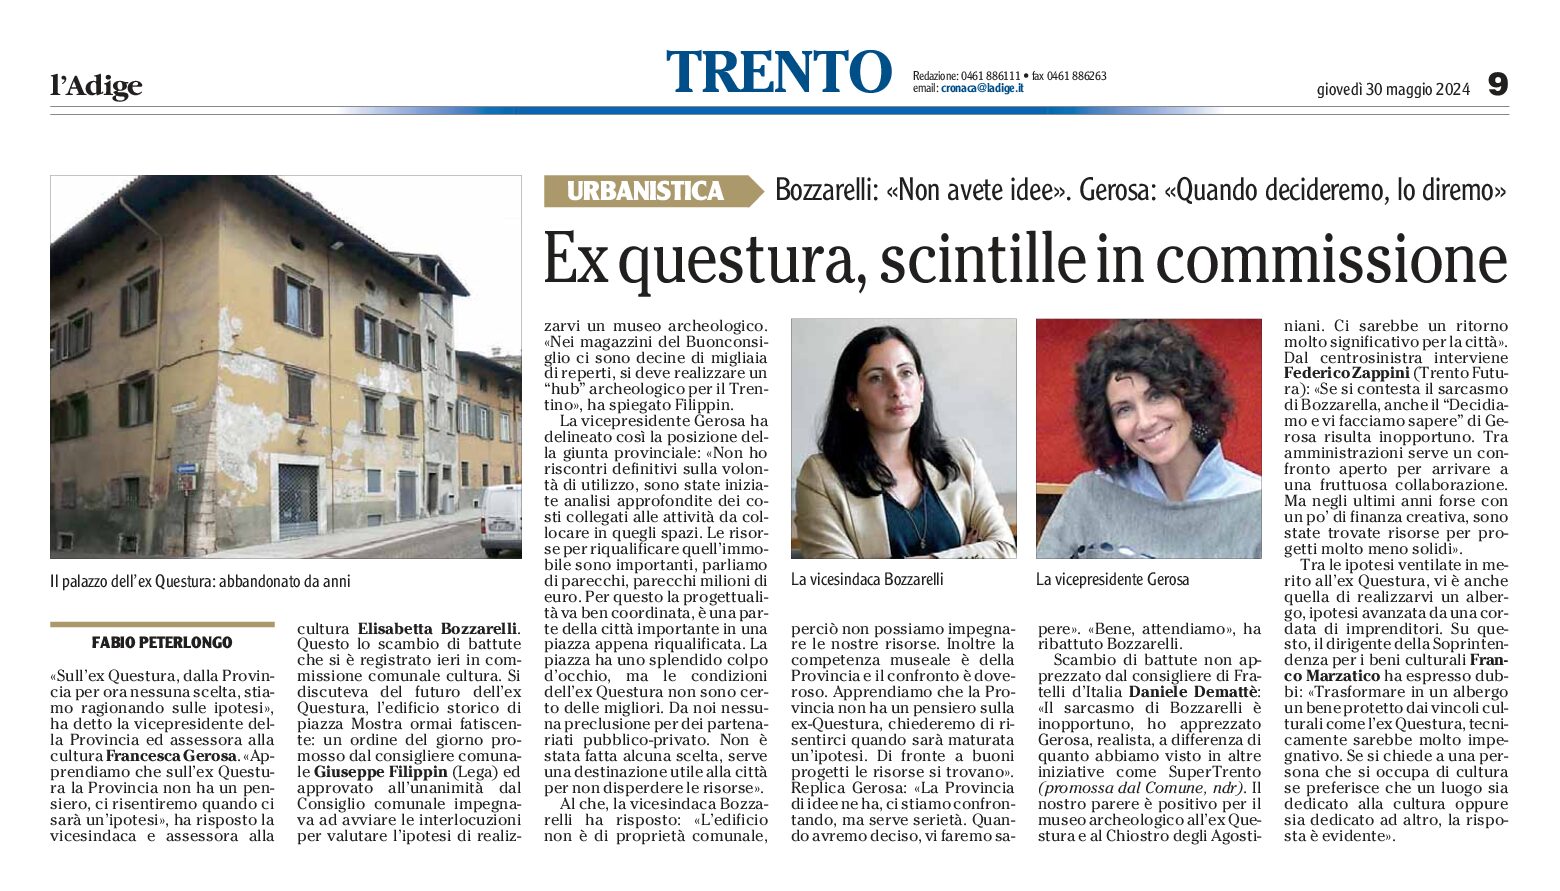 Trento, ex Questura: scintille in commissione